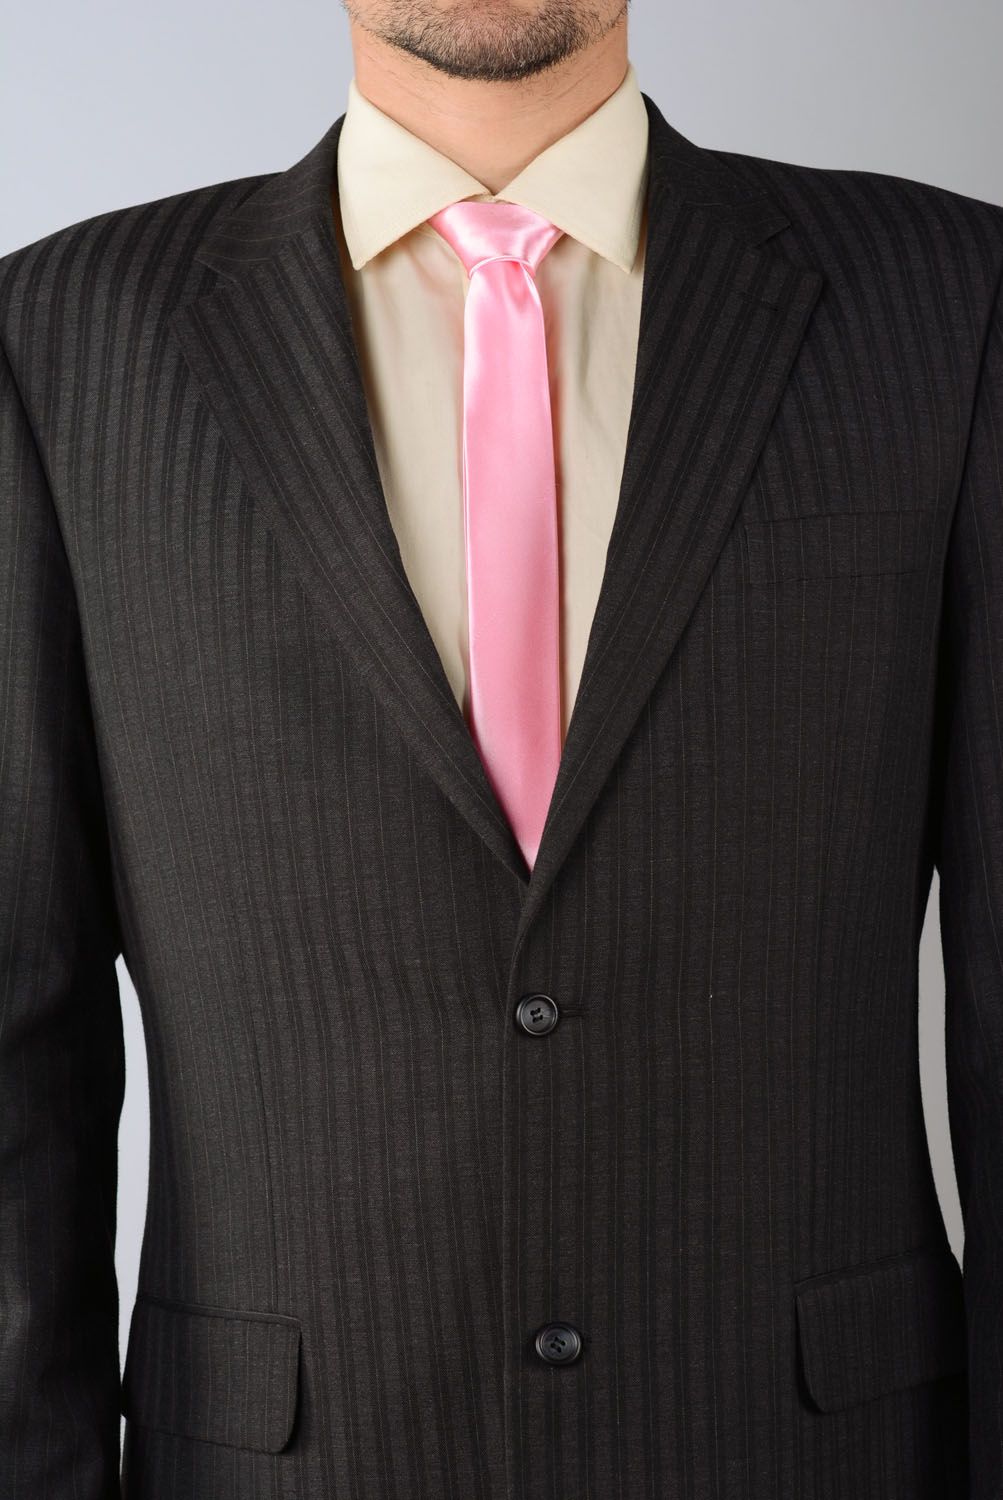 Corbata de raso rosada foto 4